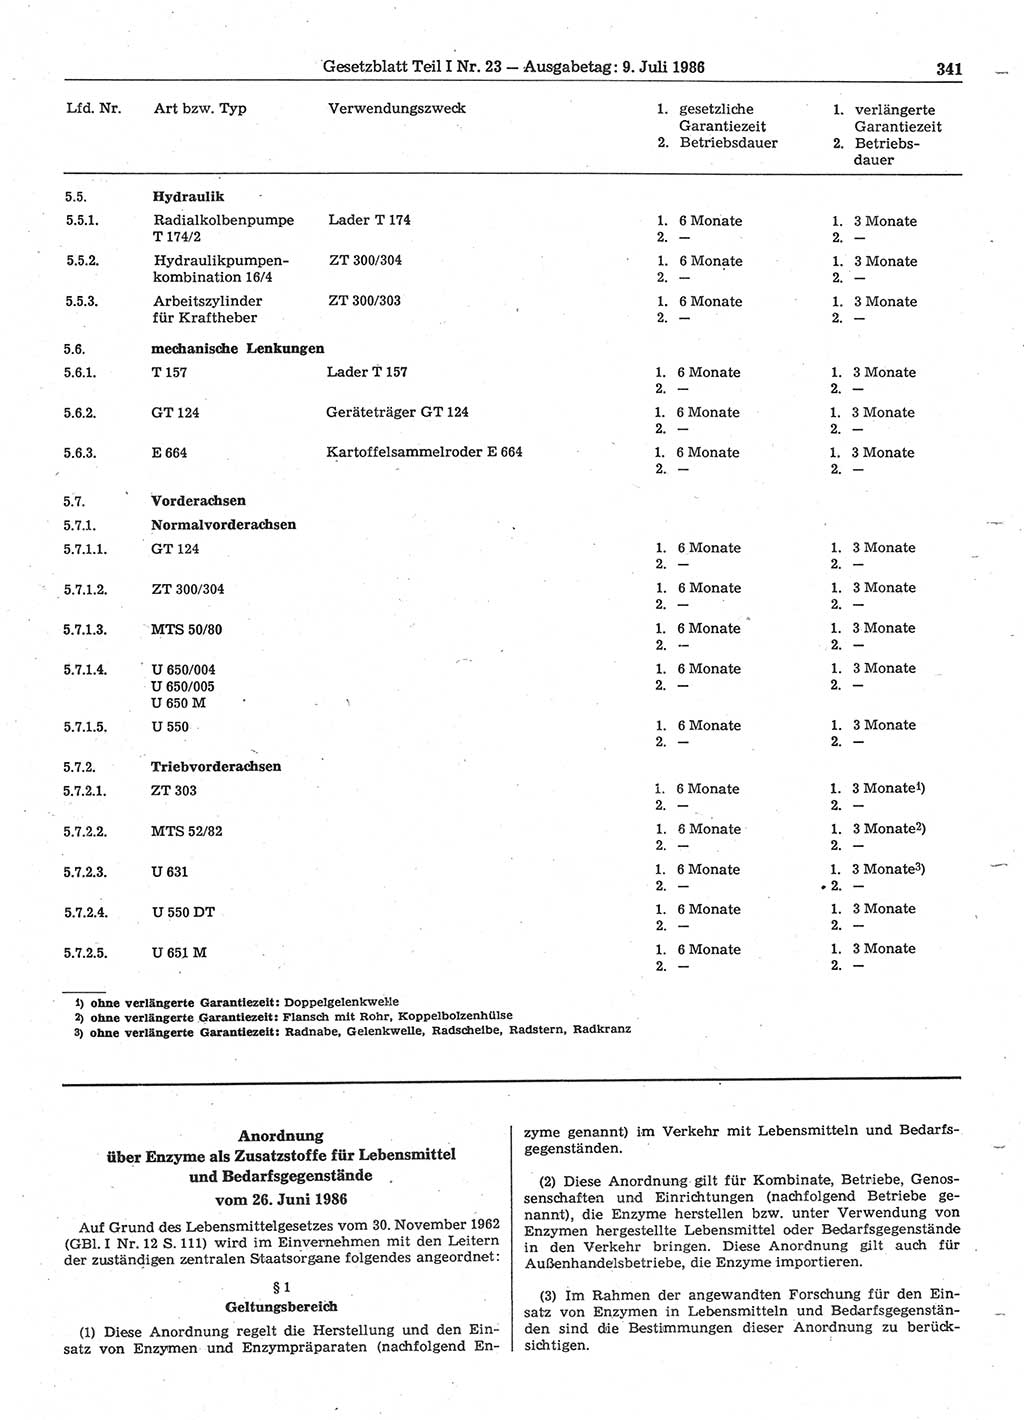 Gesetzblatt (GBl.) der Deutschen Demokratischen Republik (DDR) Teil Ⅰ 1986, Seite 341 (GBl. DDR Ⅰ 1986, S. 341)